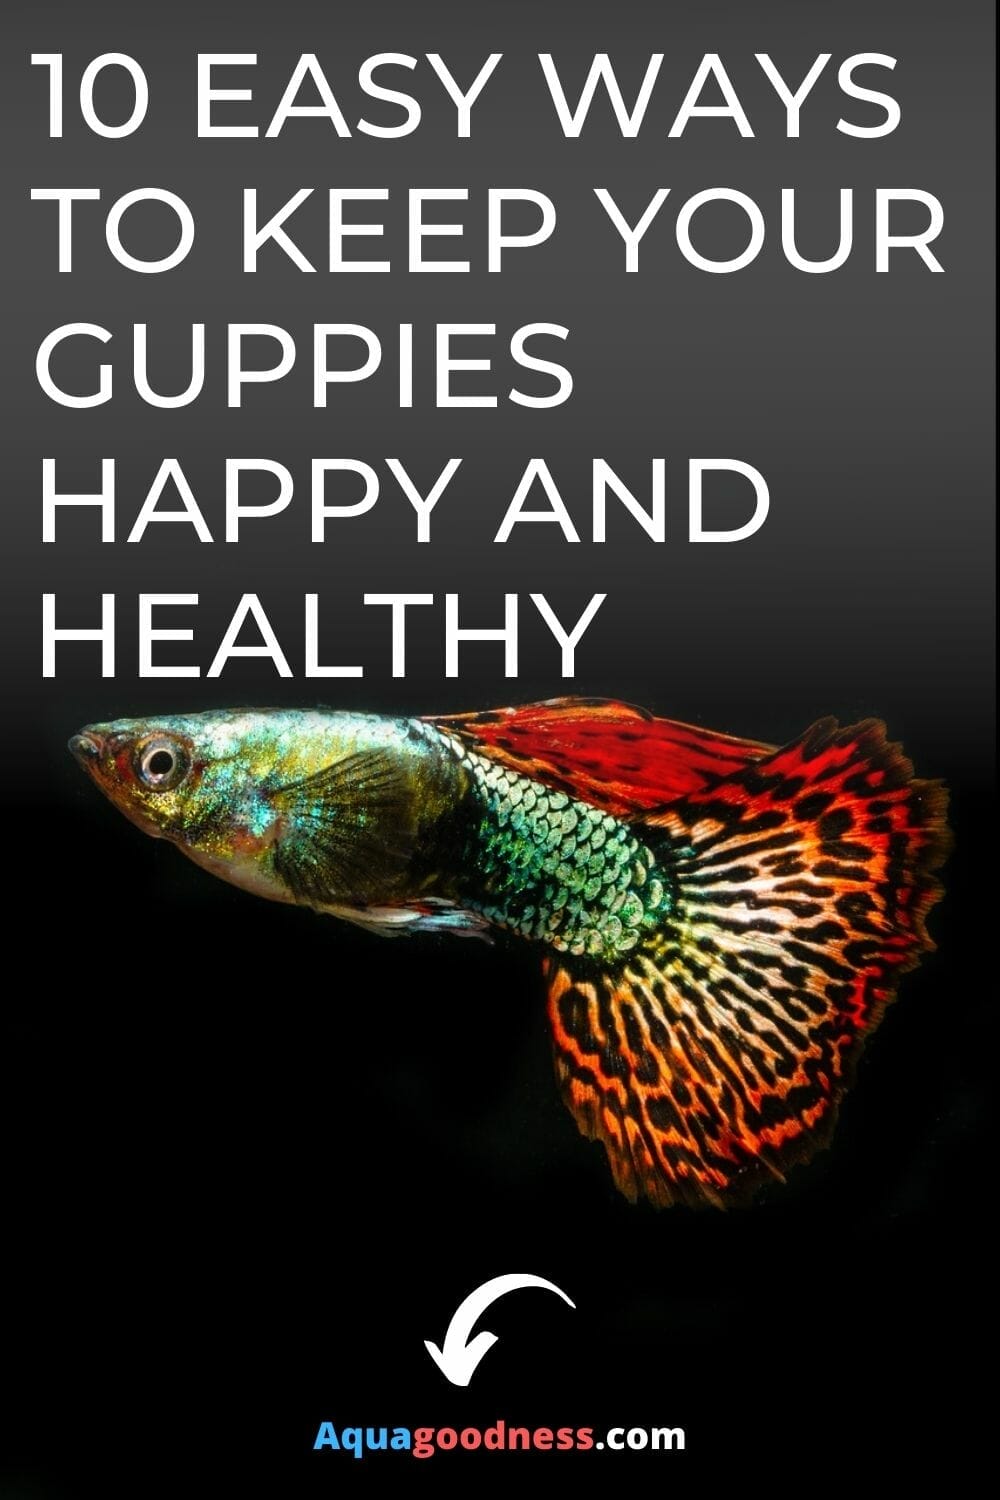 10 Enkle Måter Å Holde Guppies Lykkelig og Sunt bilde